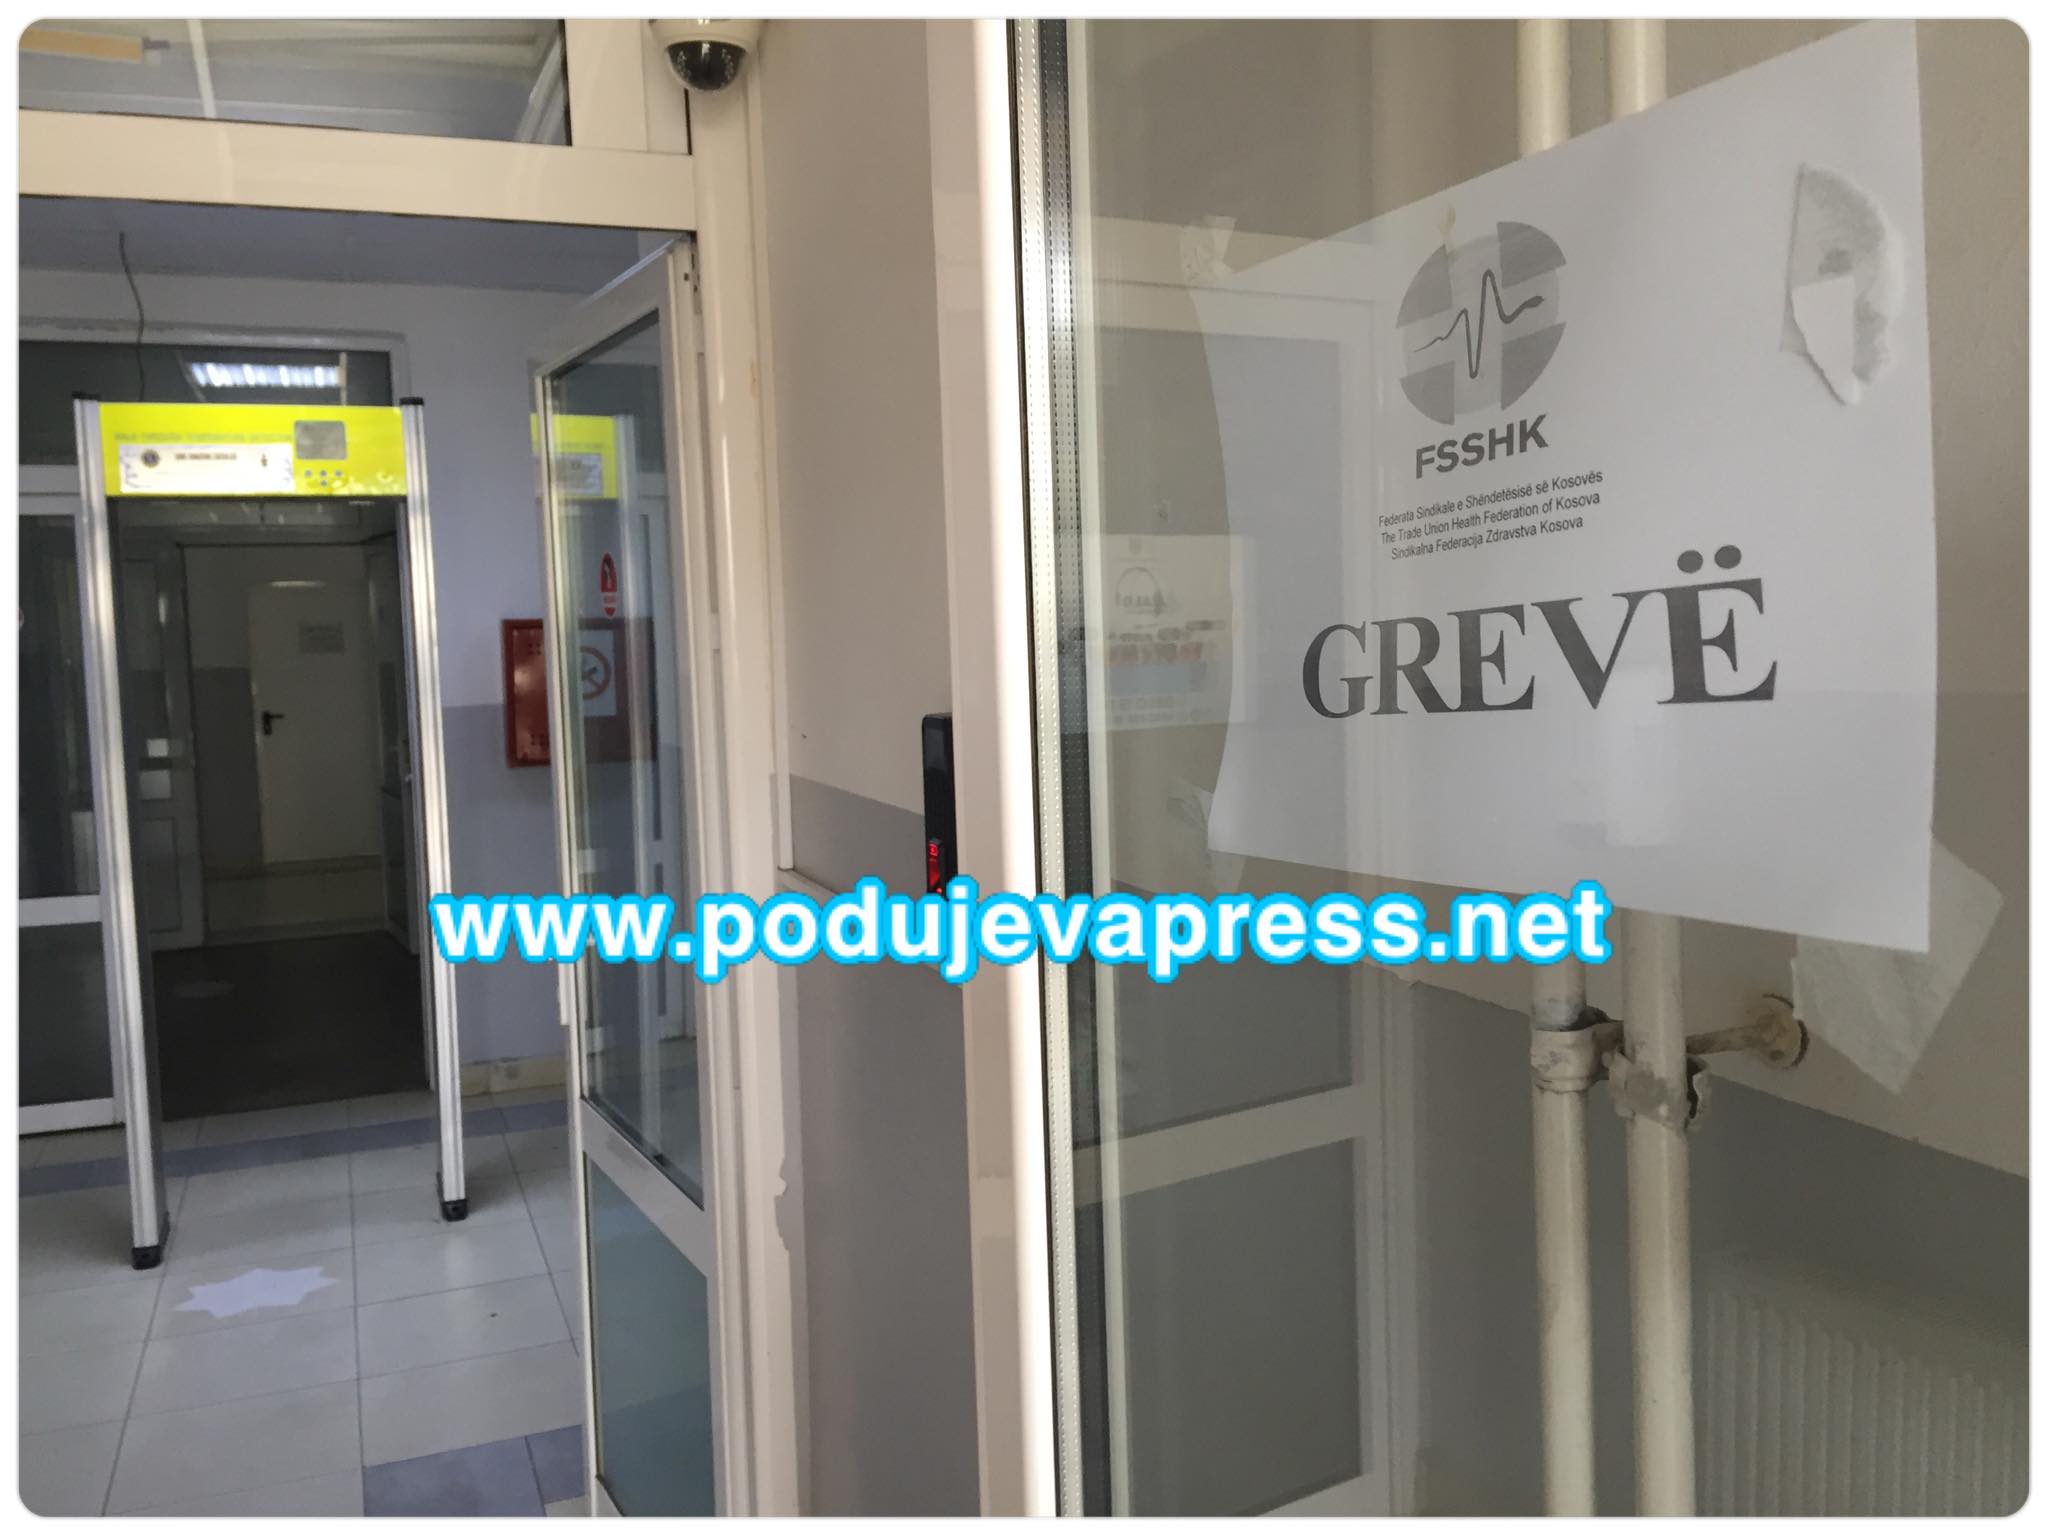  Mjekët në QKMF-në e Podujevës në grevë, pacientët në pritje